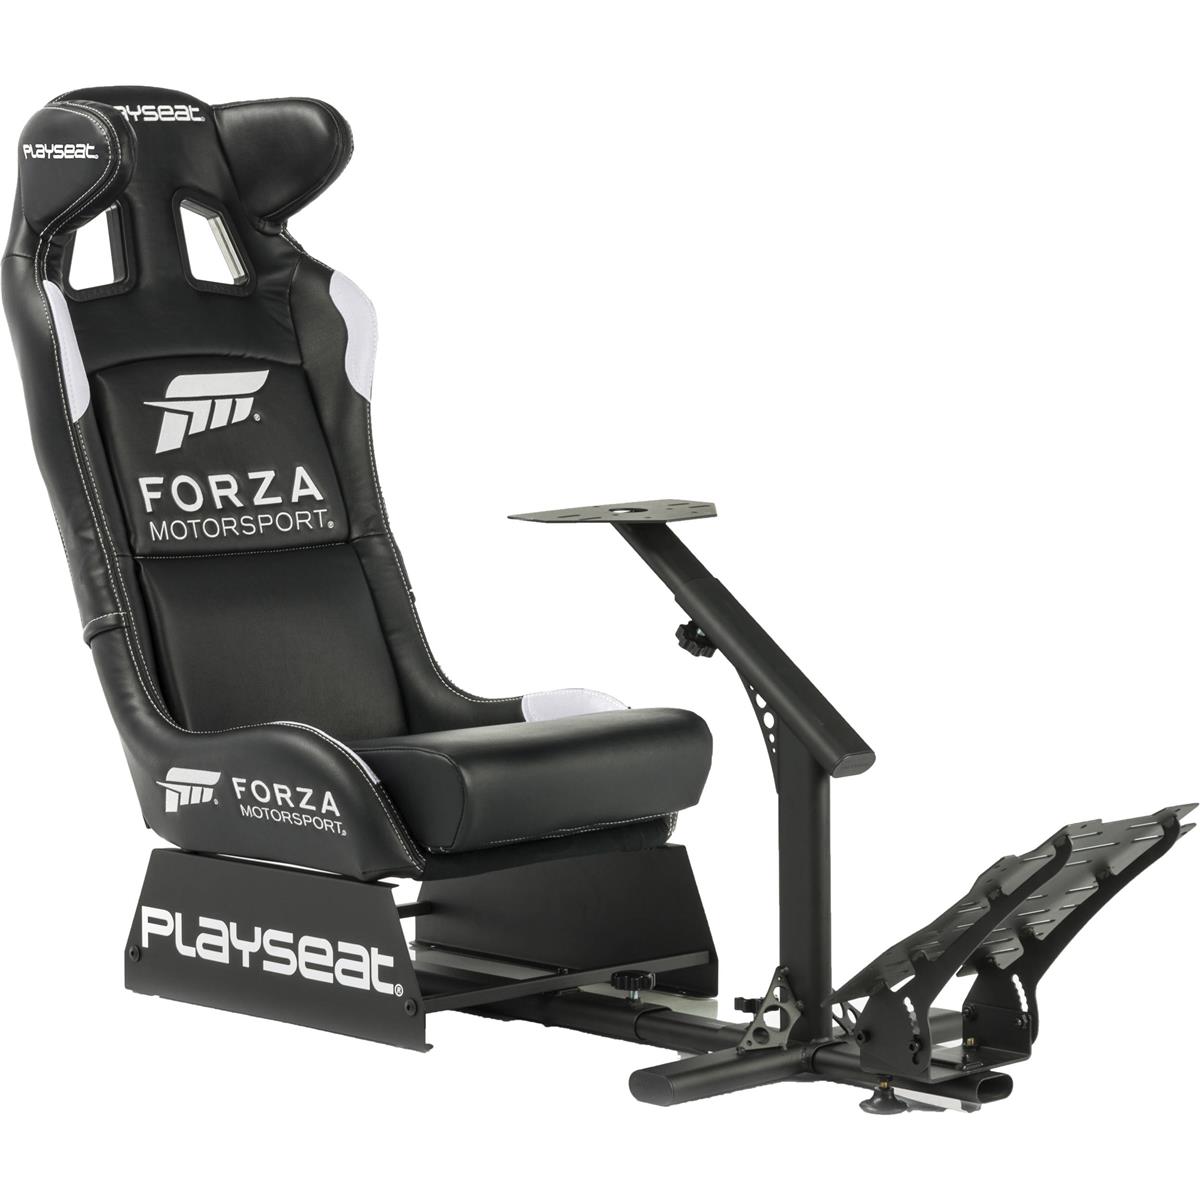 Image of Playseat Forza Motorsport Gaming Seat